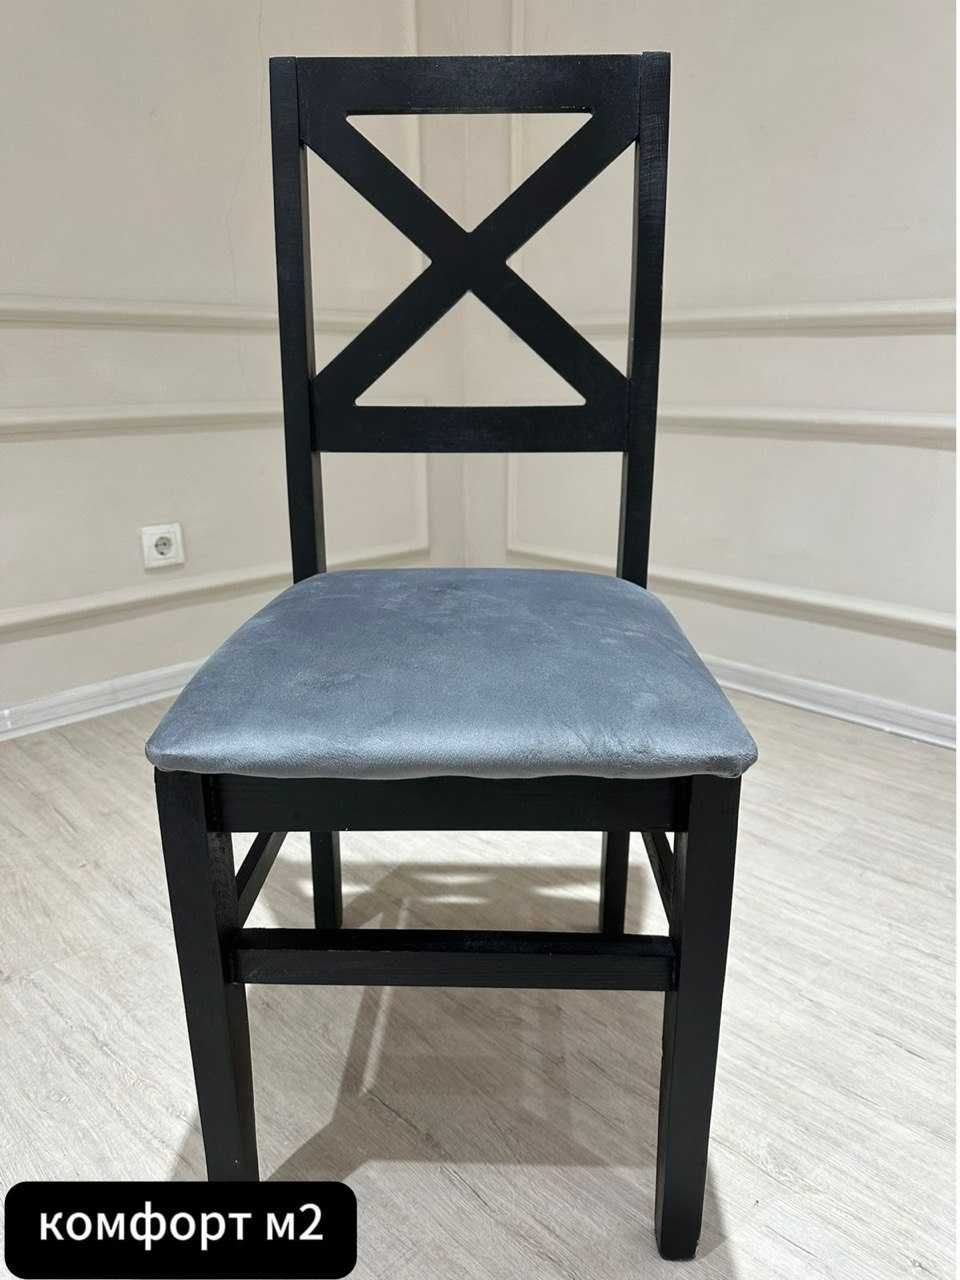 Обновите свой интерьер с нашей элегантной коллекцией столов и стульев!